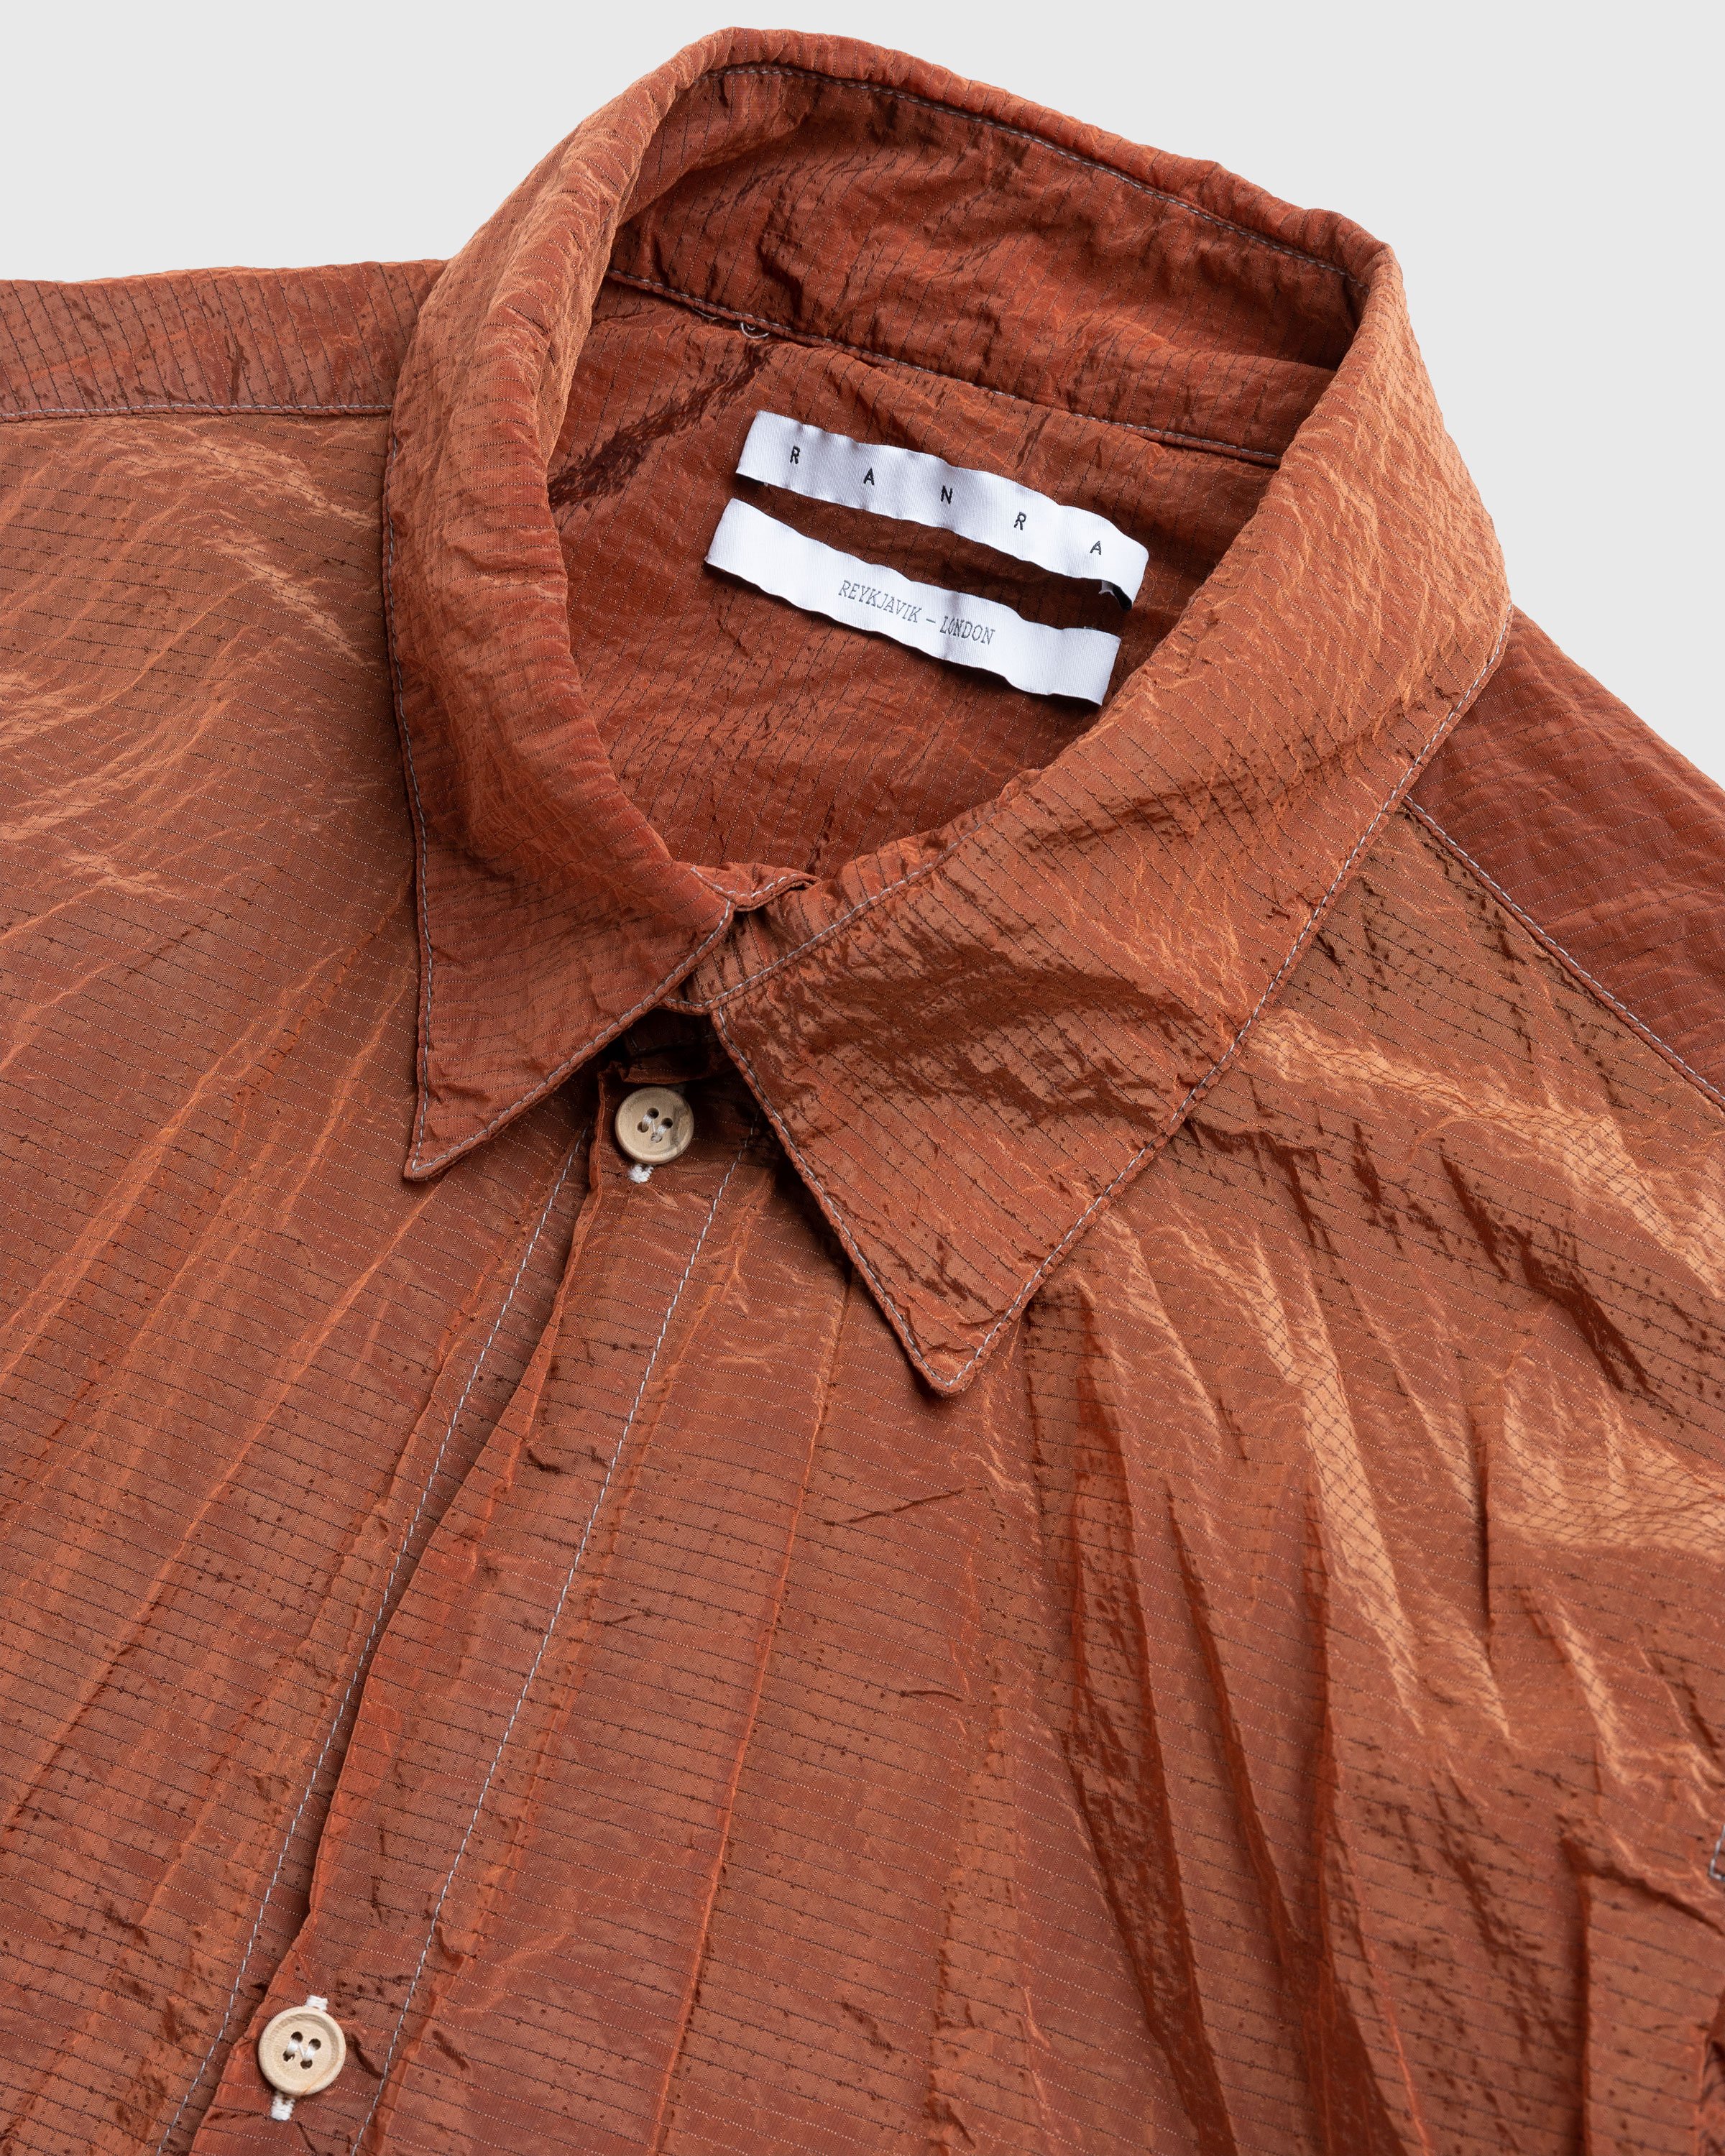 RANRA - Jor Shirt Jacket Pureed Plum - Clothing - Red - Image 5